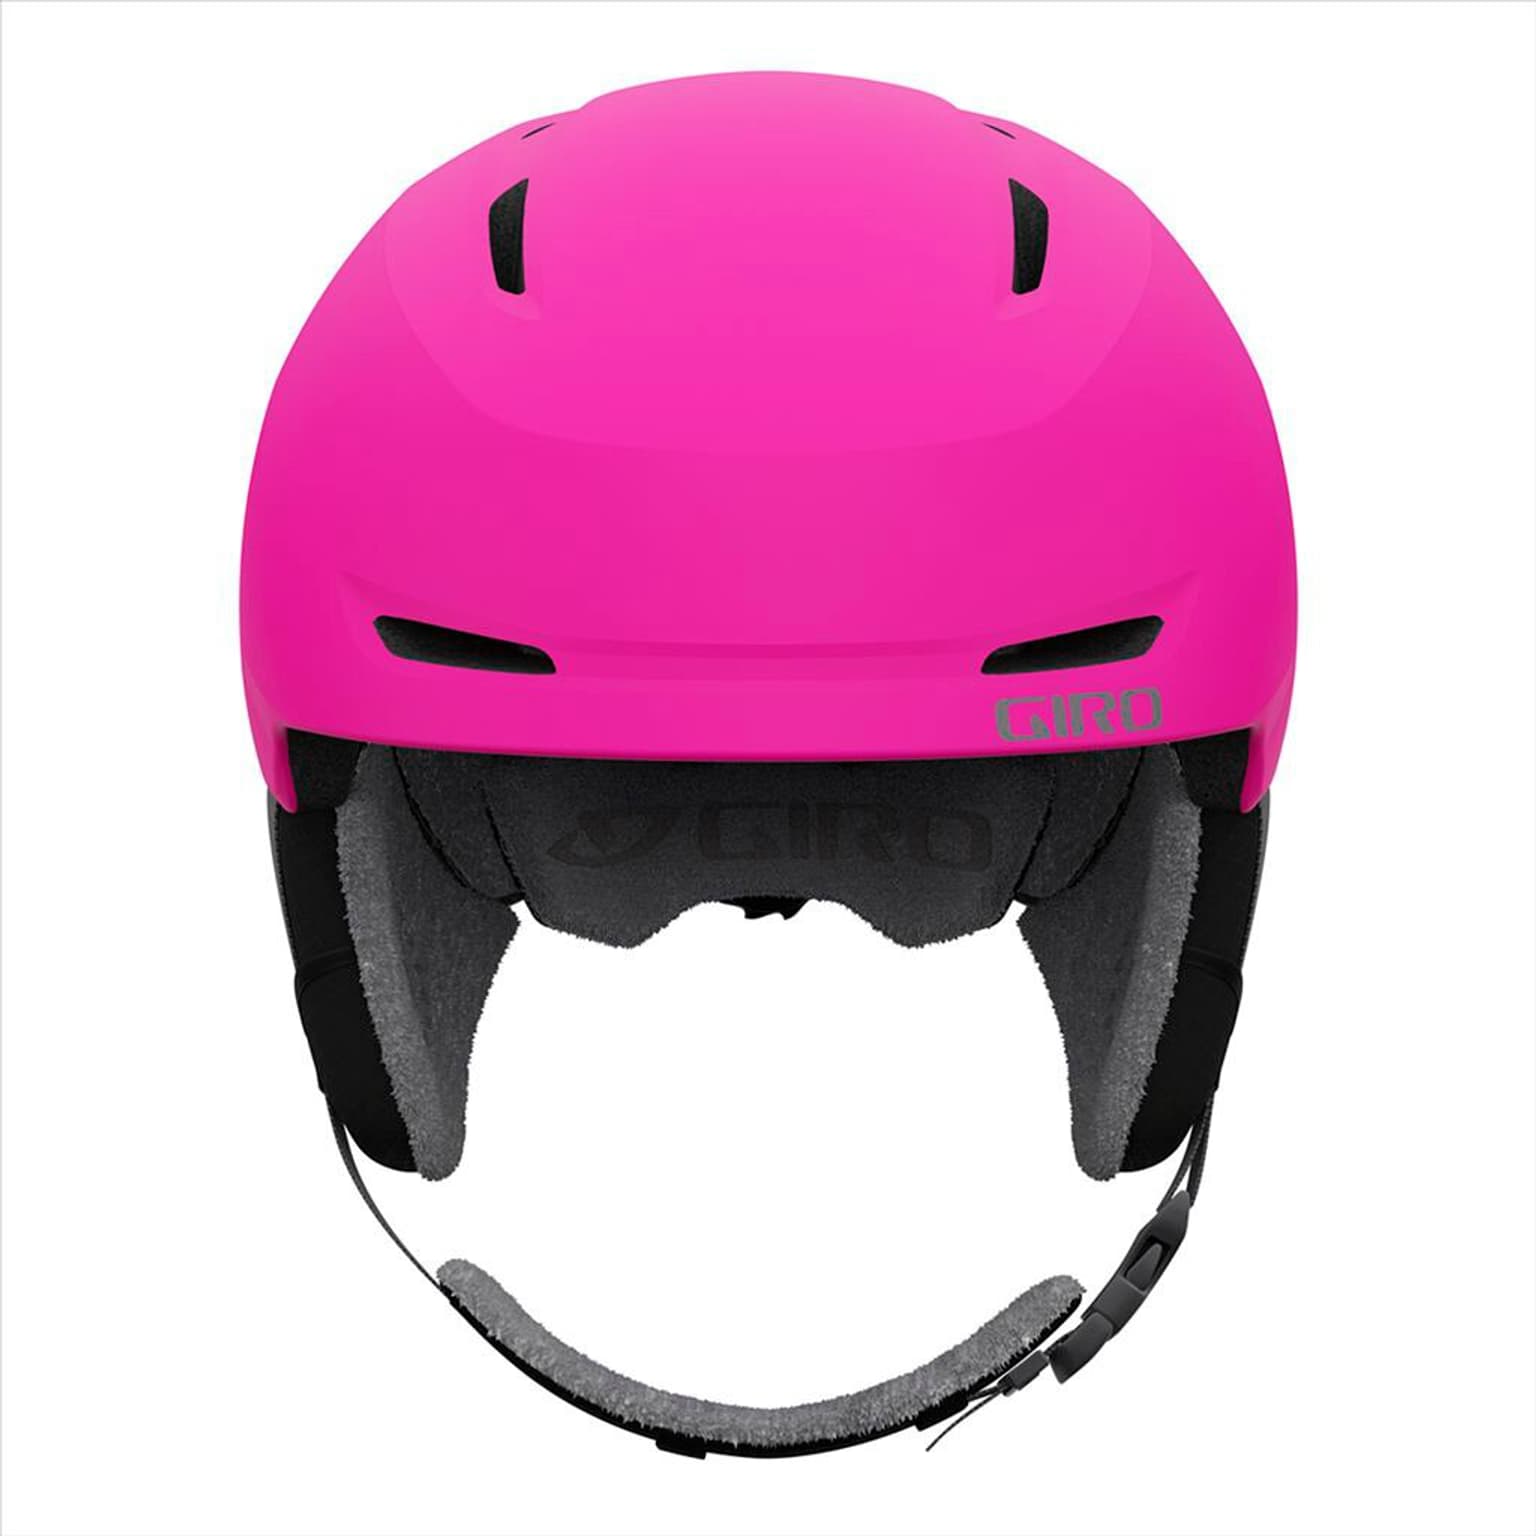 Giro Giro Spur Helmet Casque de ski magenta 3